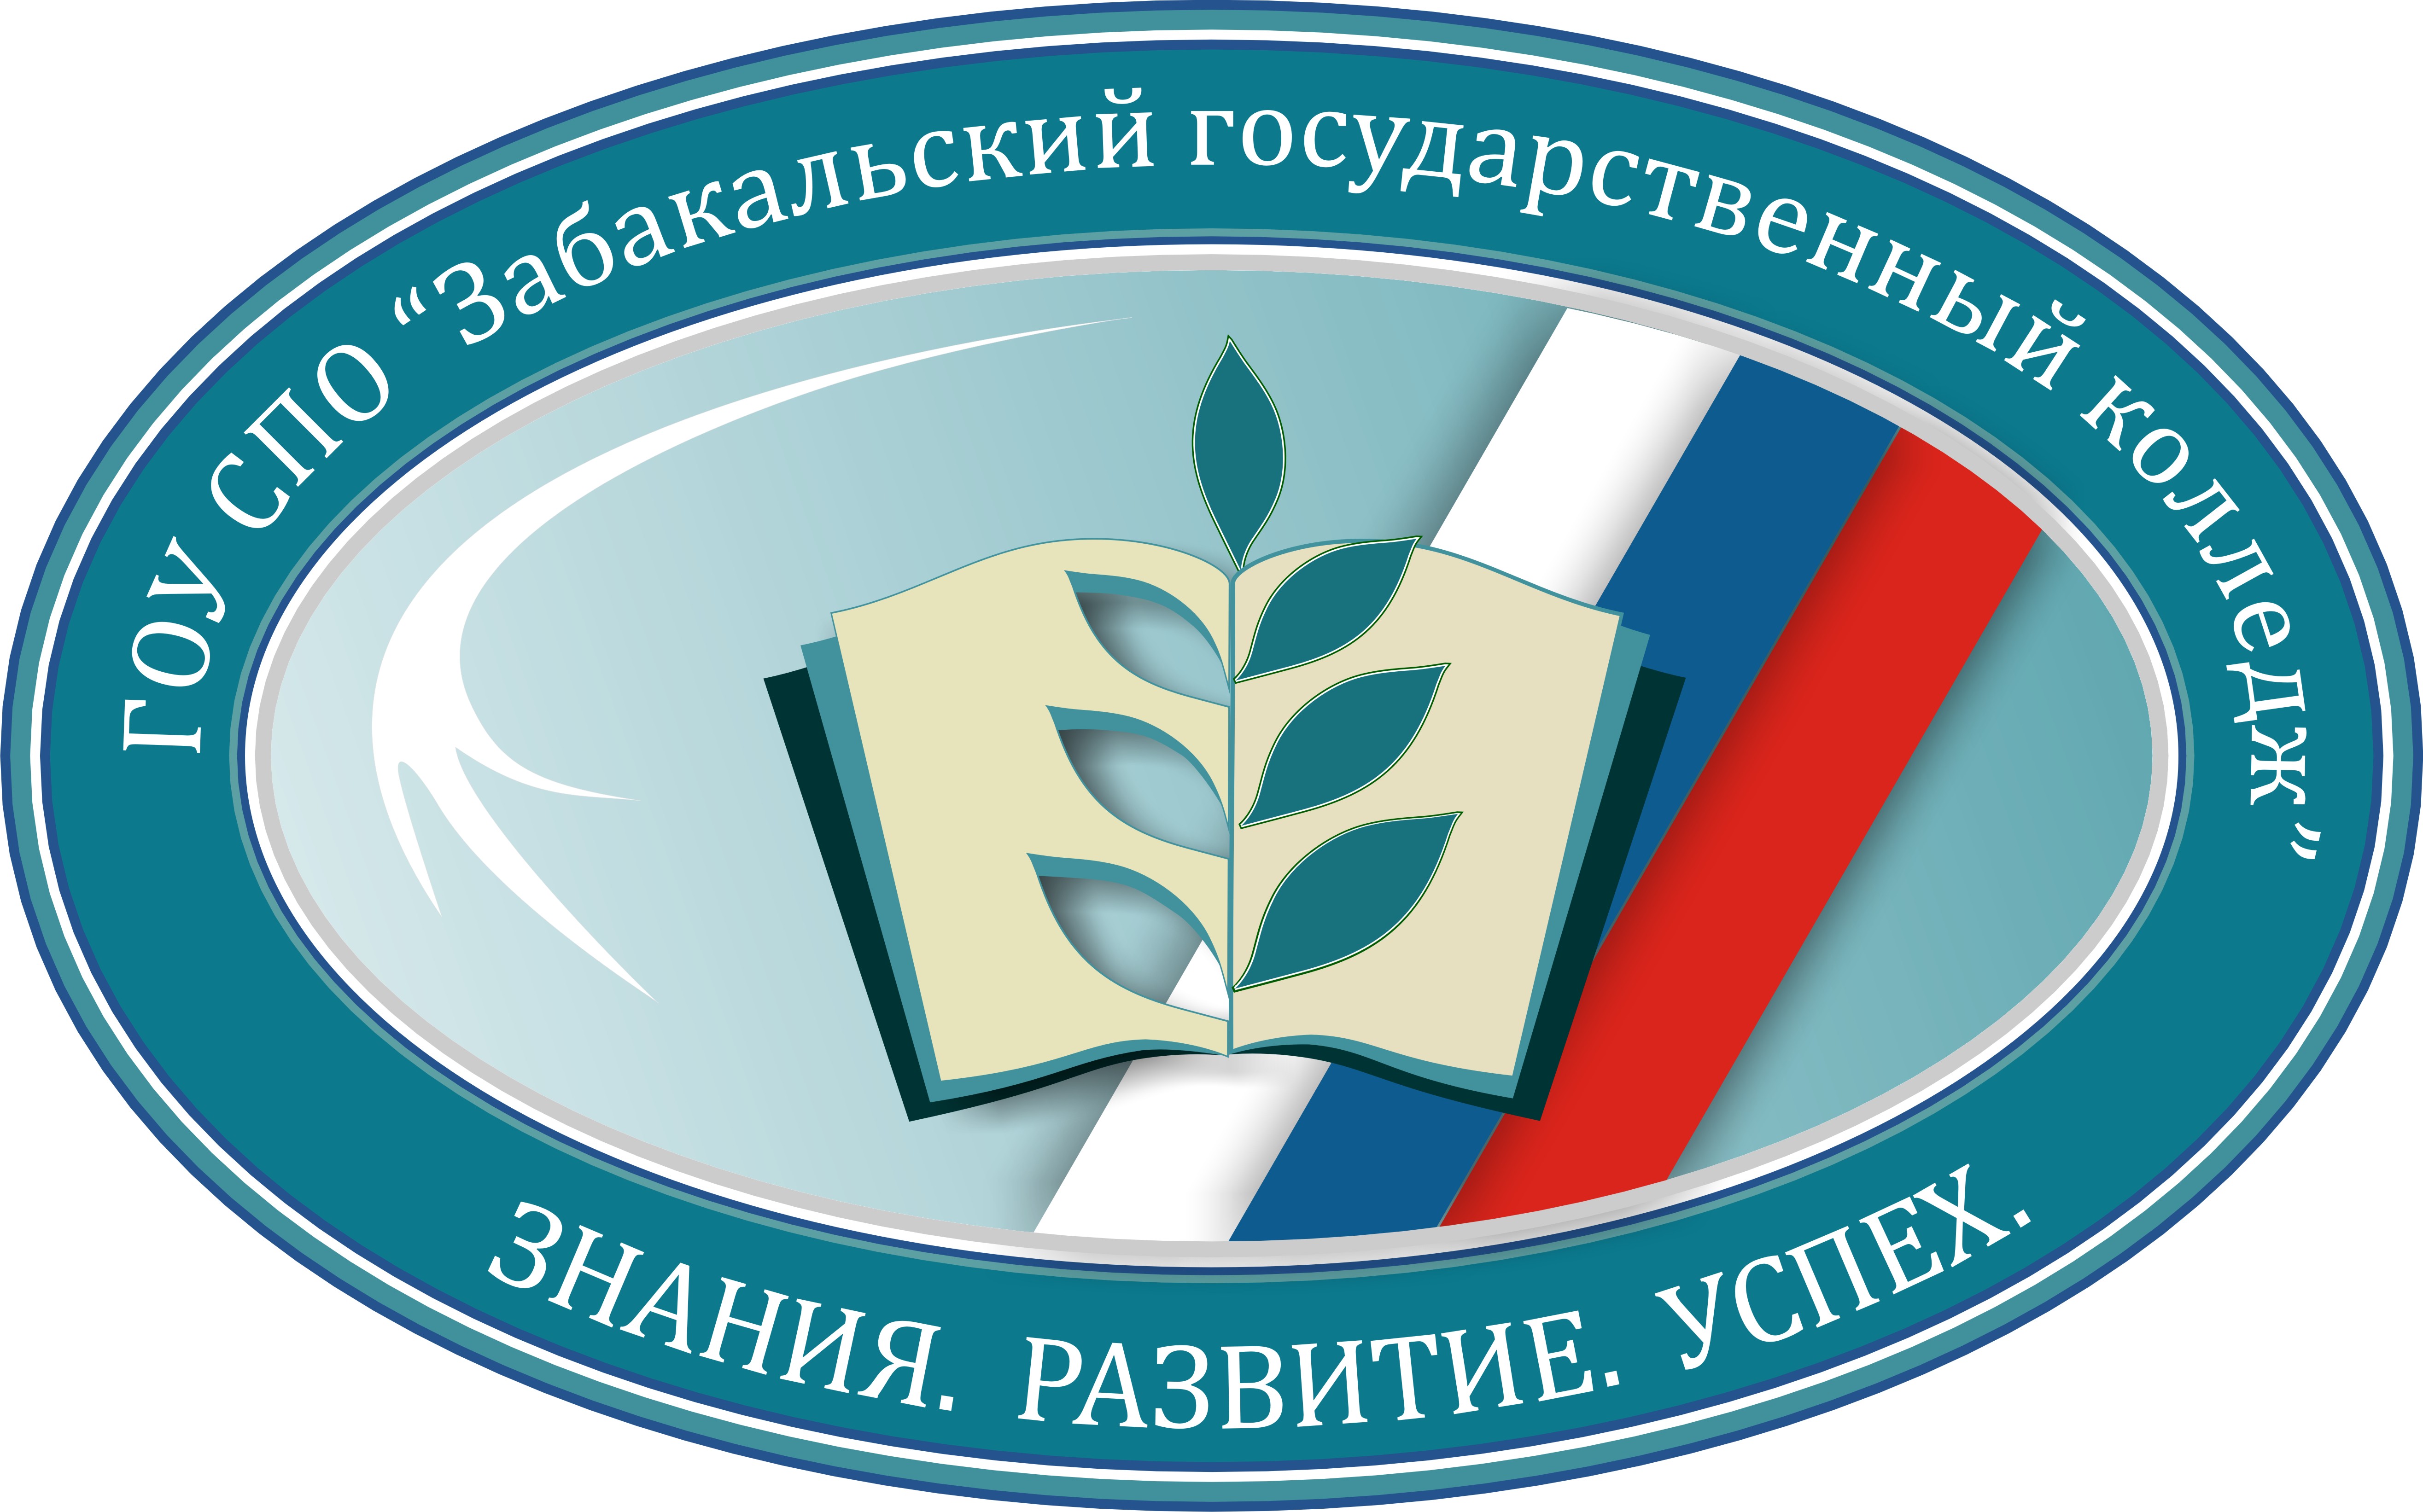 Логотип (Забайкальский государственный колледж)